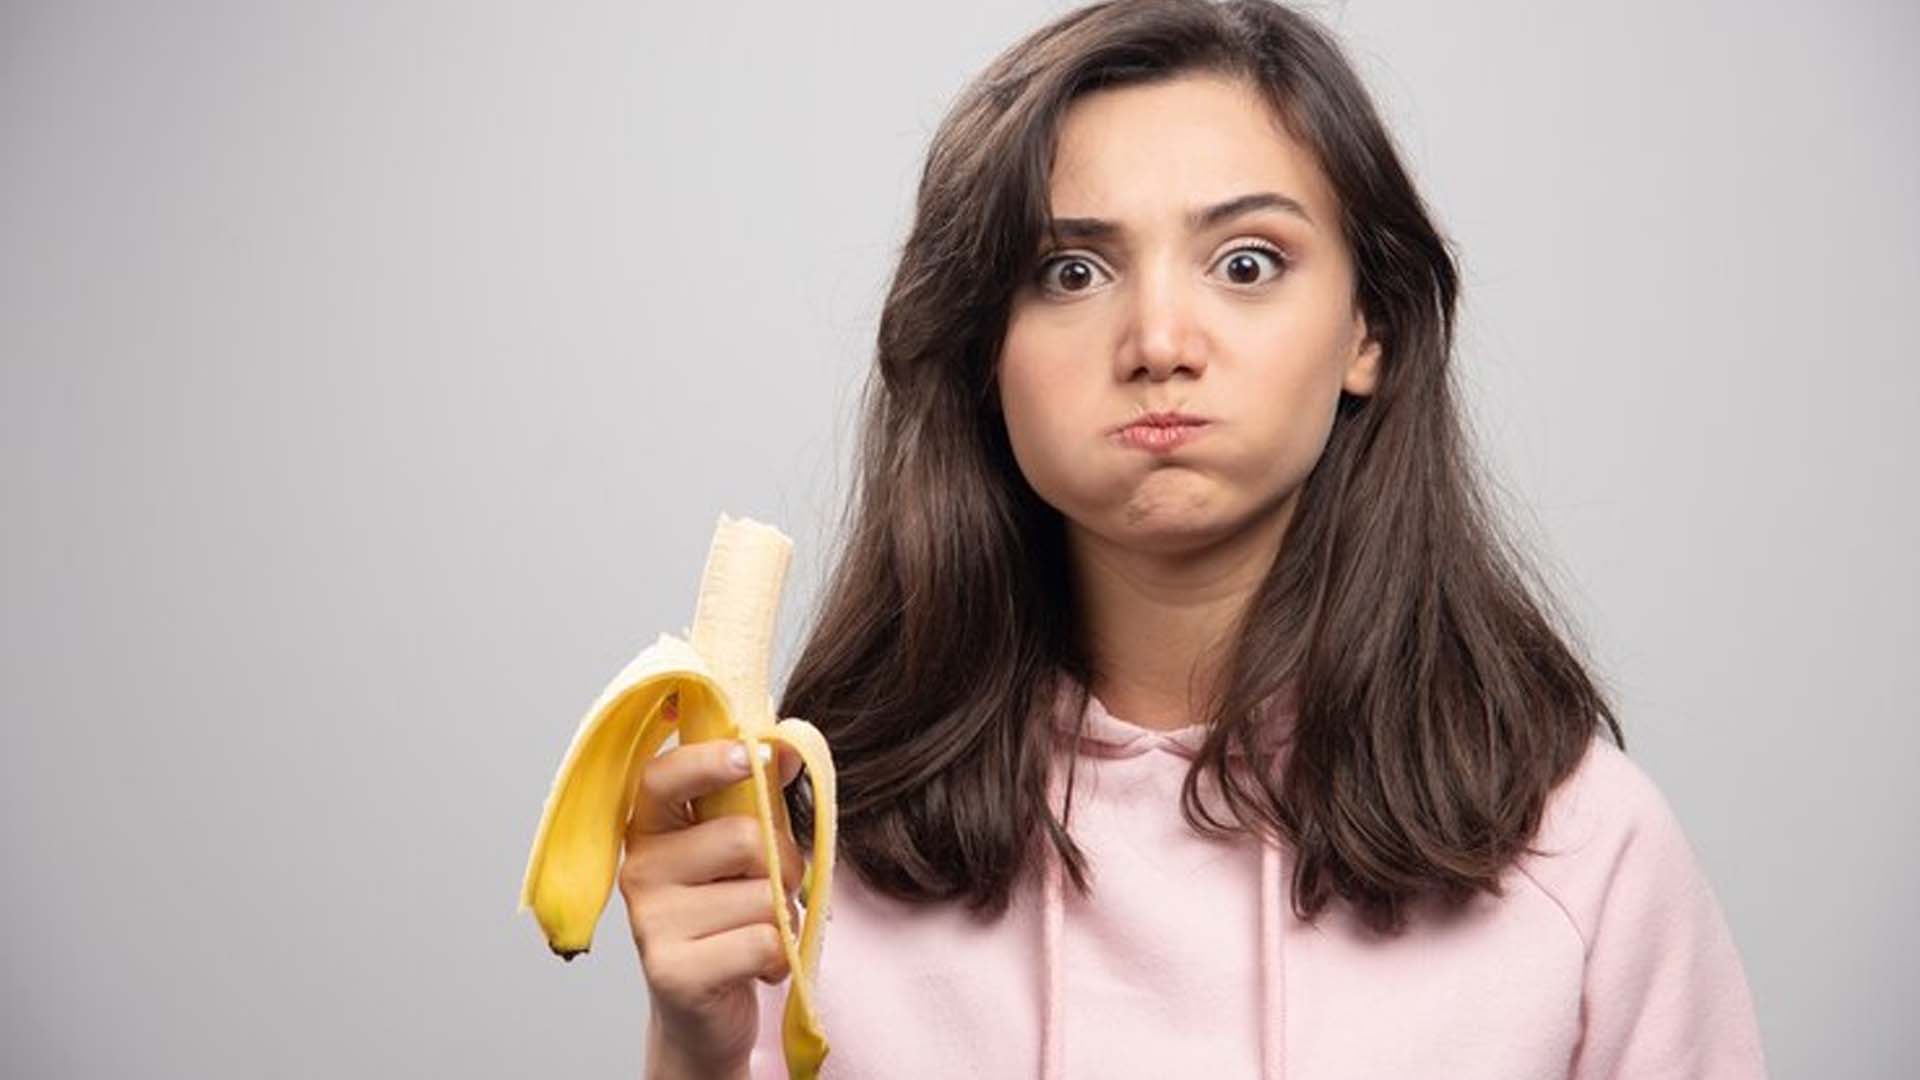 Girl eating Banana